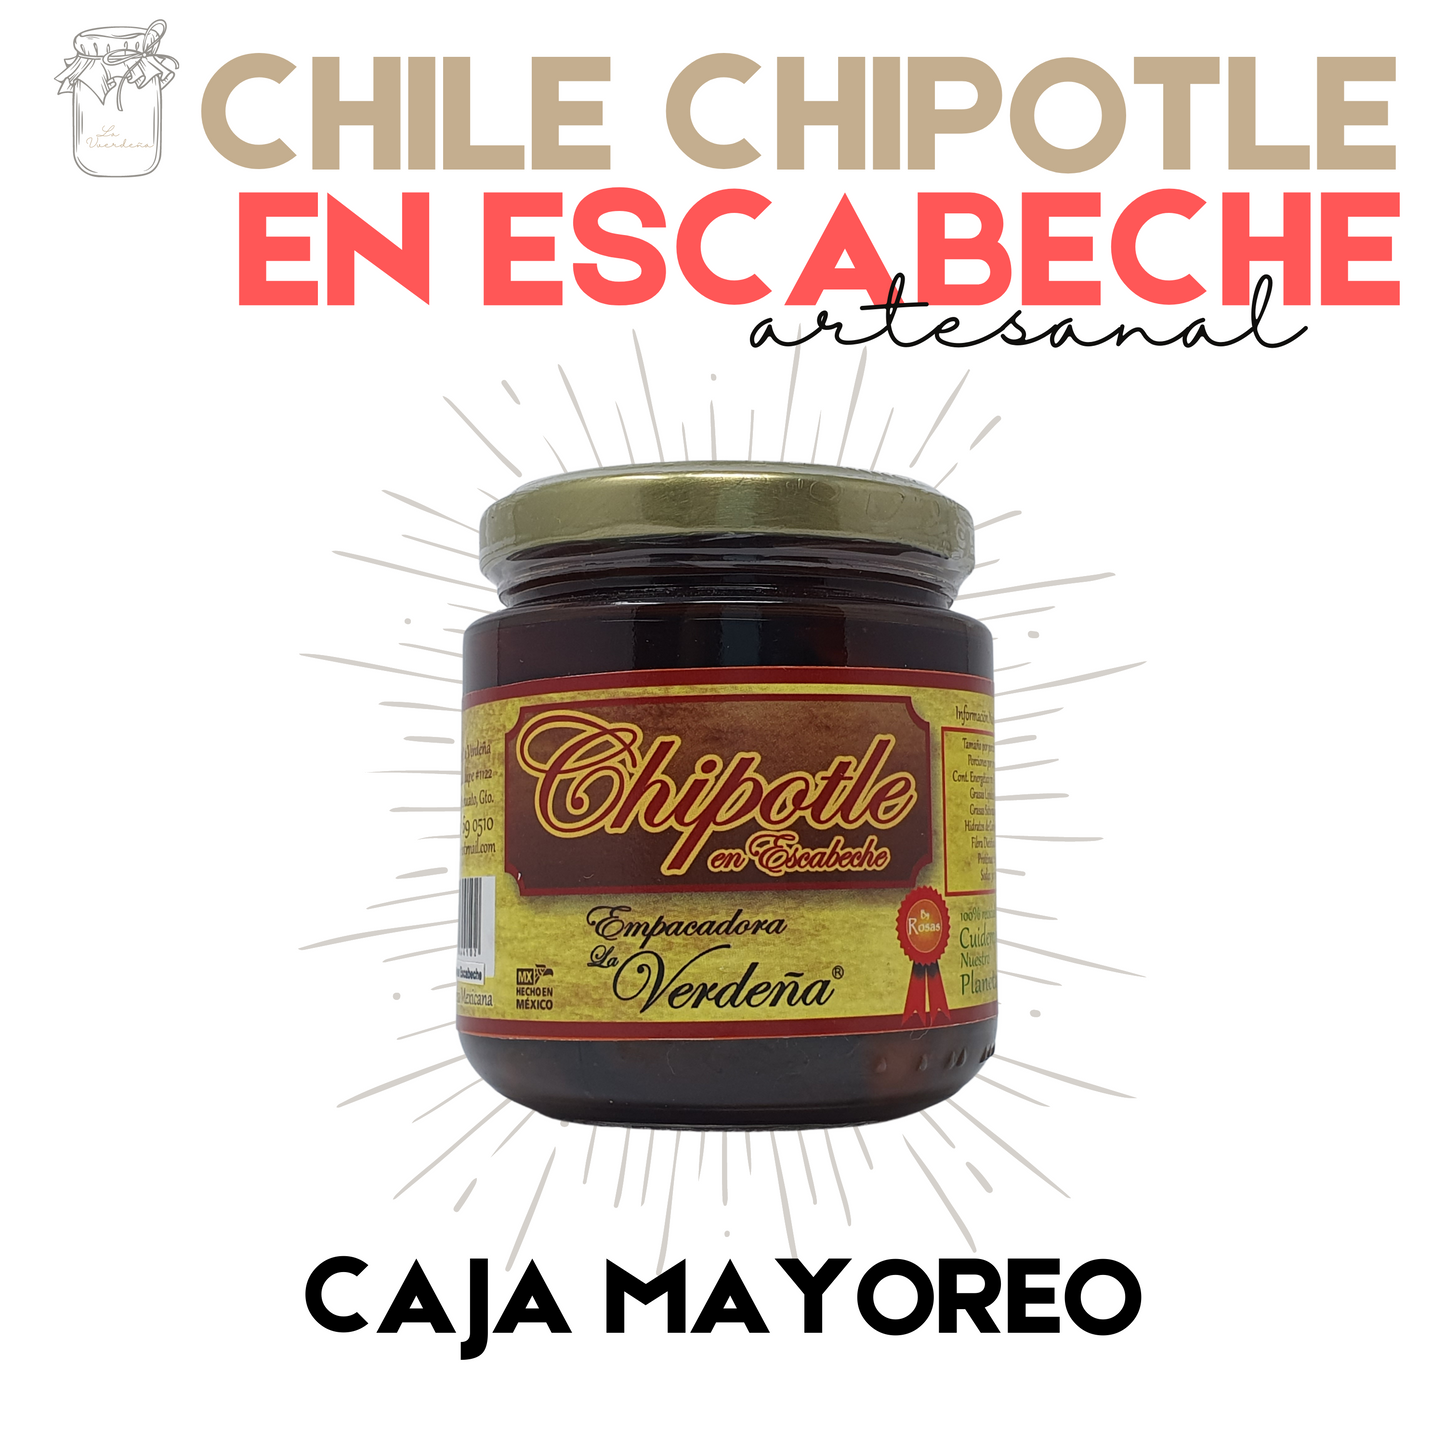 Chipotle en Escabeche | Chile Chipotle | Gourmet | Artesanal | 12 frascos | Mexpofood